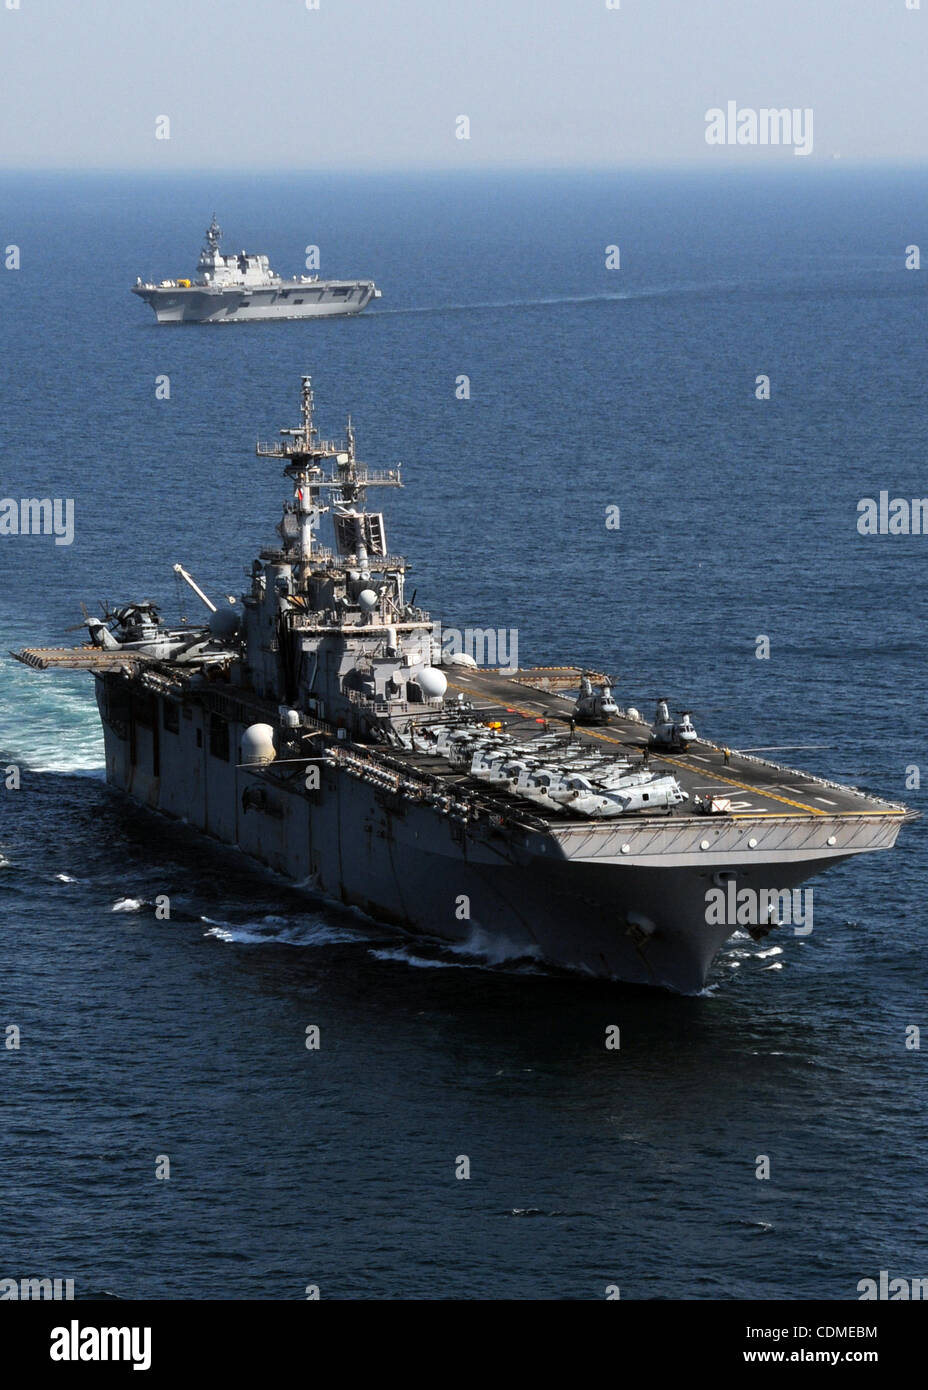 Aprile 6, 2011 - Giappone - In questa dispensa foto rilasciata dalla U.S. Navy adottate il 6 aprile 2011 all'Oceano Pacifico, il distribuita Amphibious Assault nave USS Essex (LHD 2) vapori in formazione Japan Maritime Self Defence Force nave JS Hyuga (DDH 181). Essex, con l'avviato 31 Expedit Marine Foto Stock